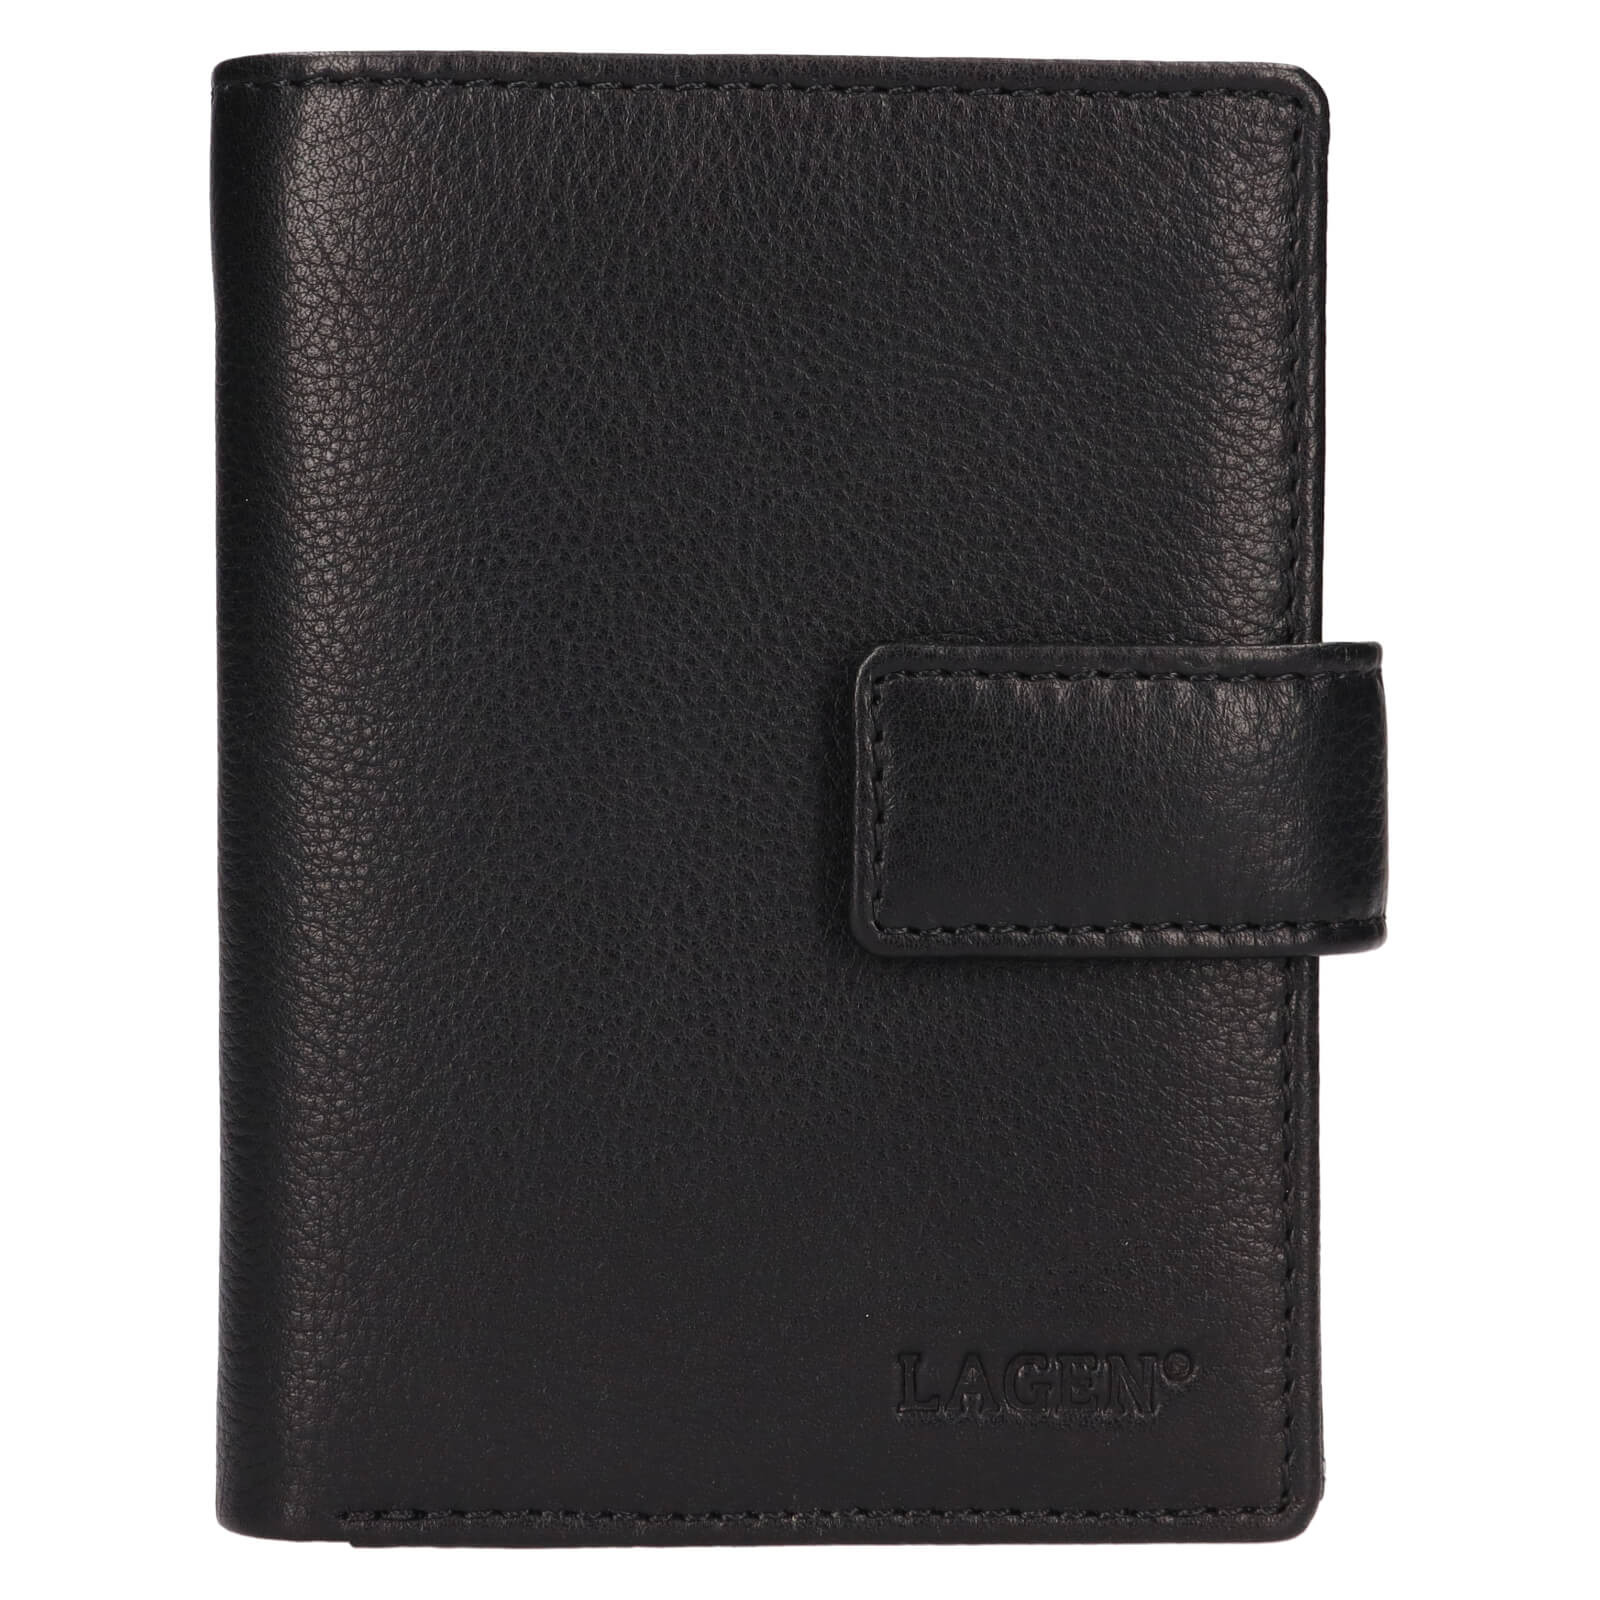 Pánská kožená peněženka Lagen Göte - černá